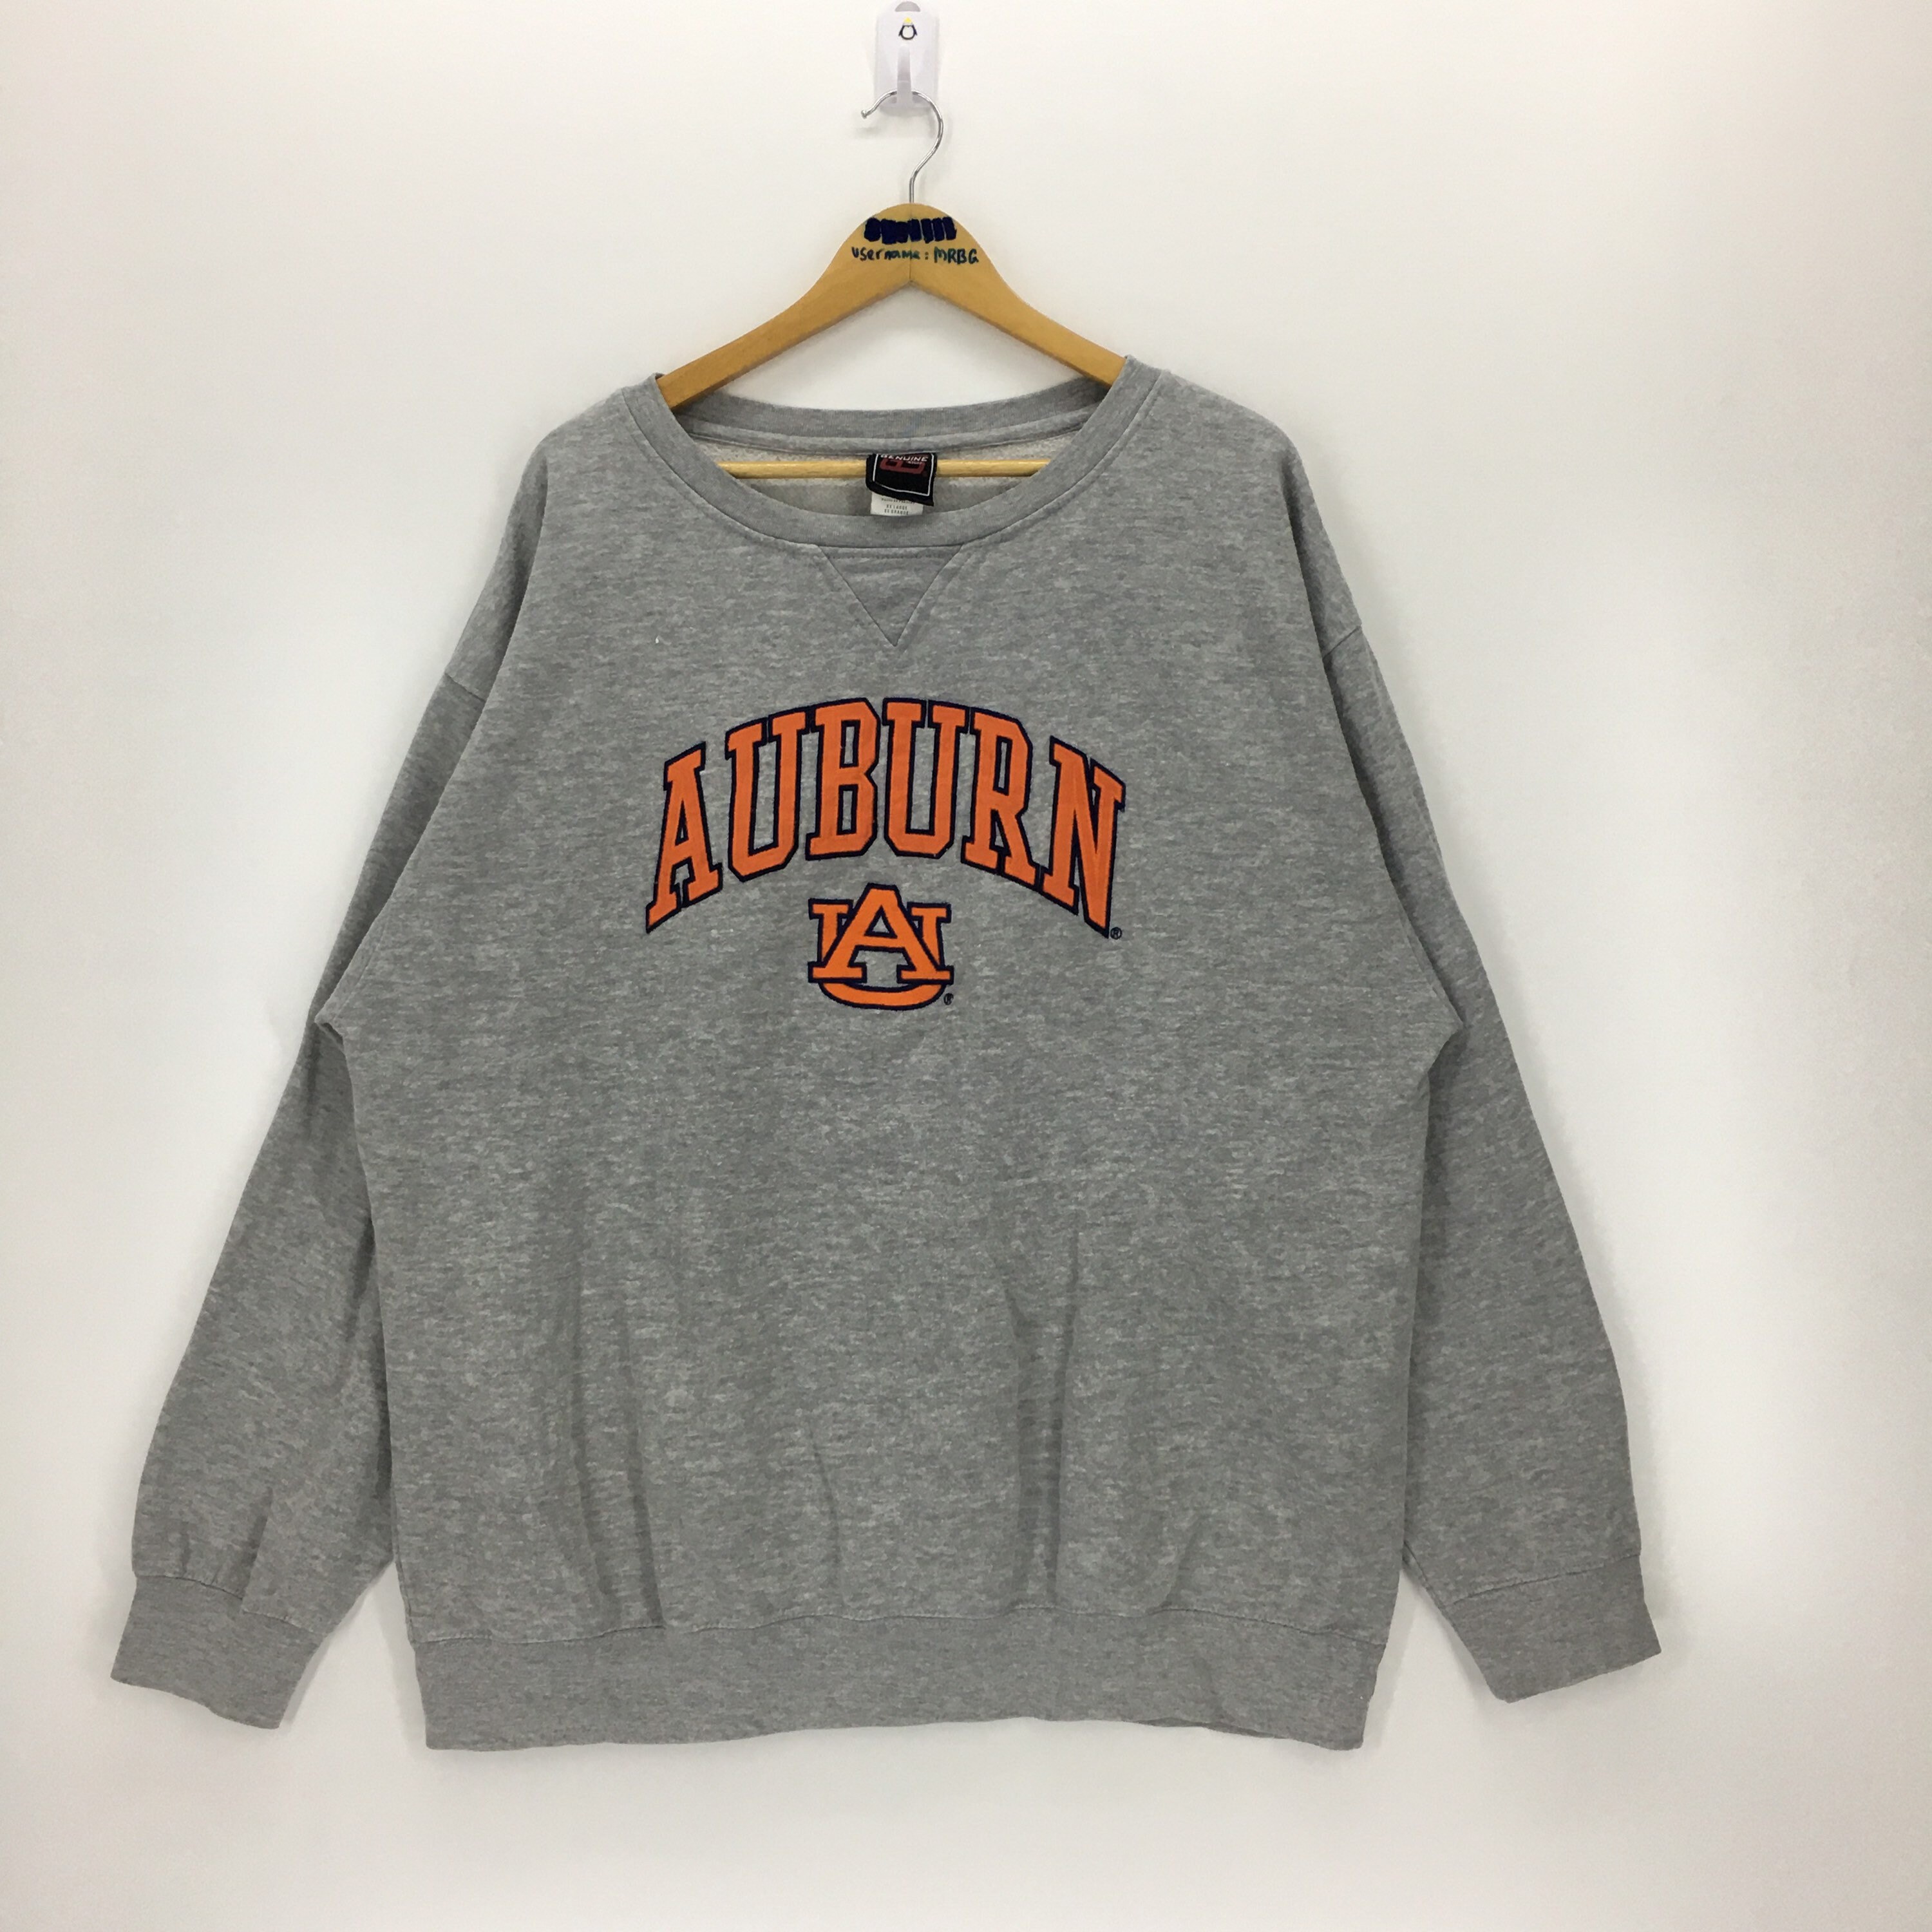 Vintage University Of Auburn Tigers Sweatshirt | Etsy